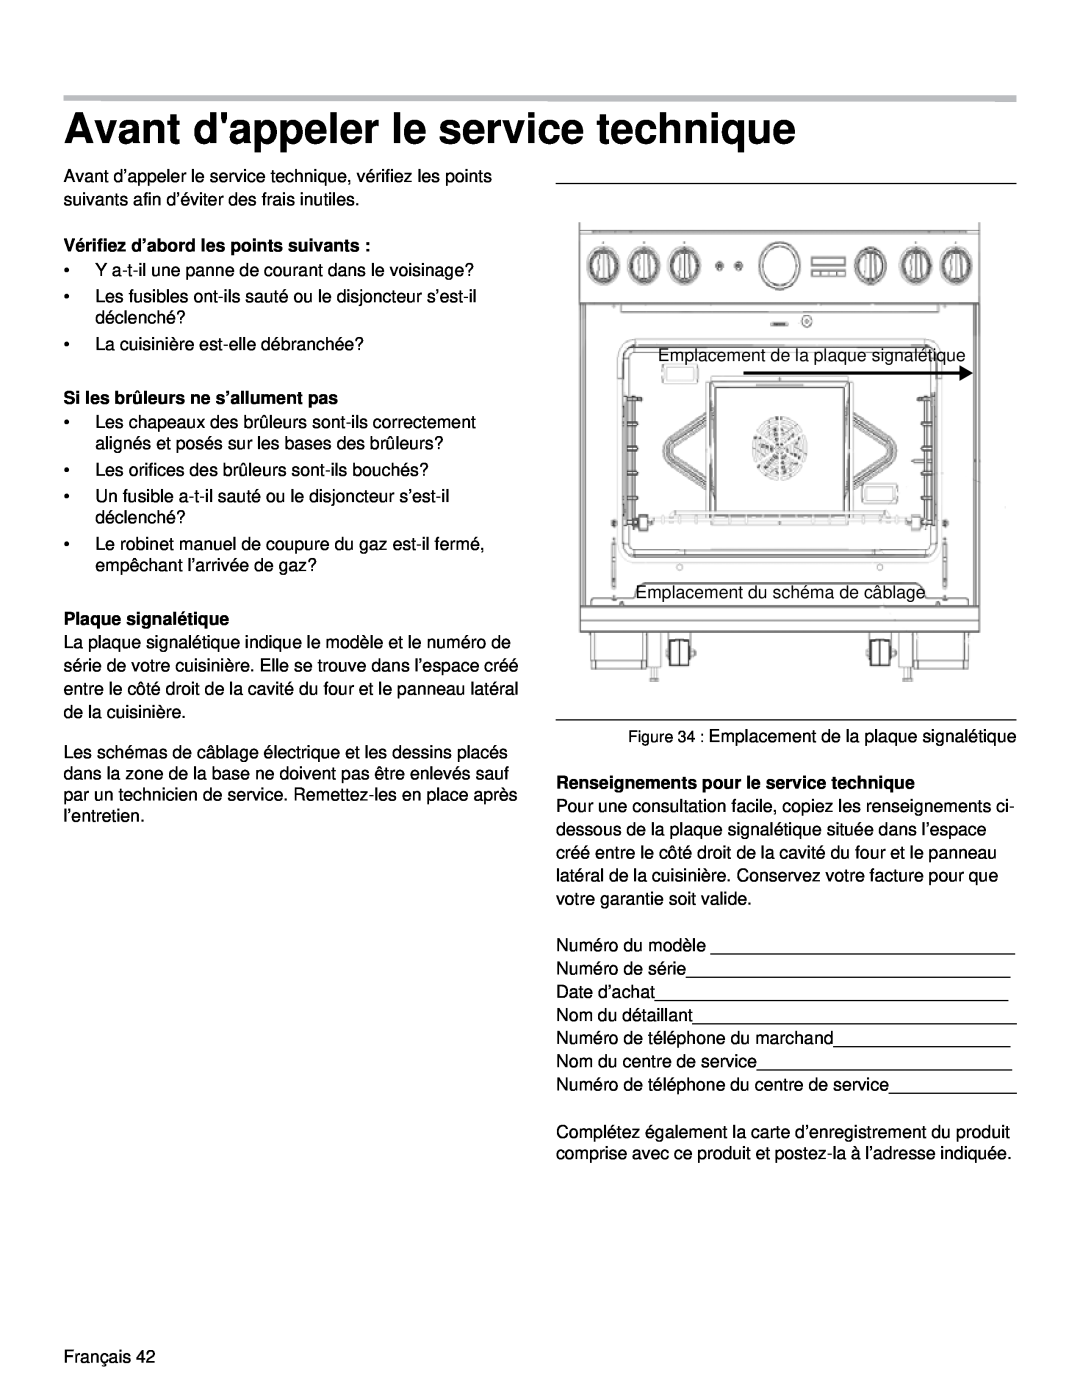 Thermador PRD36, PRD48 manual Avant dappeler le service technique, Vérifiez d’abord les points suivants, Plaque signalétique 